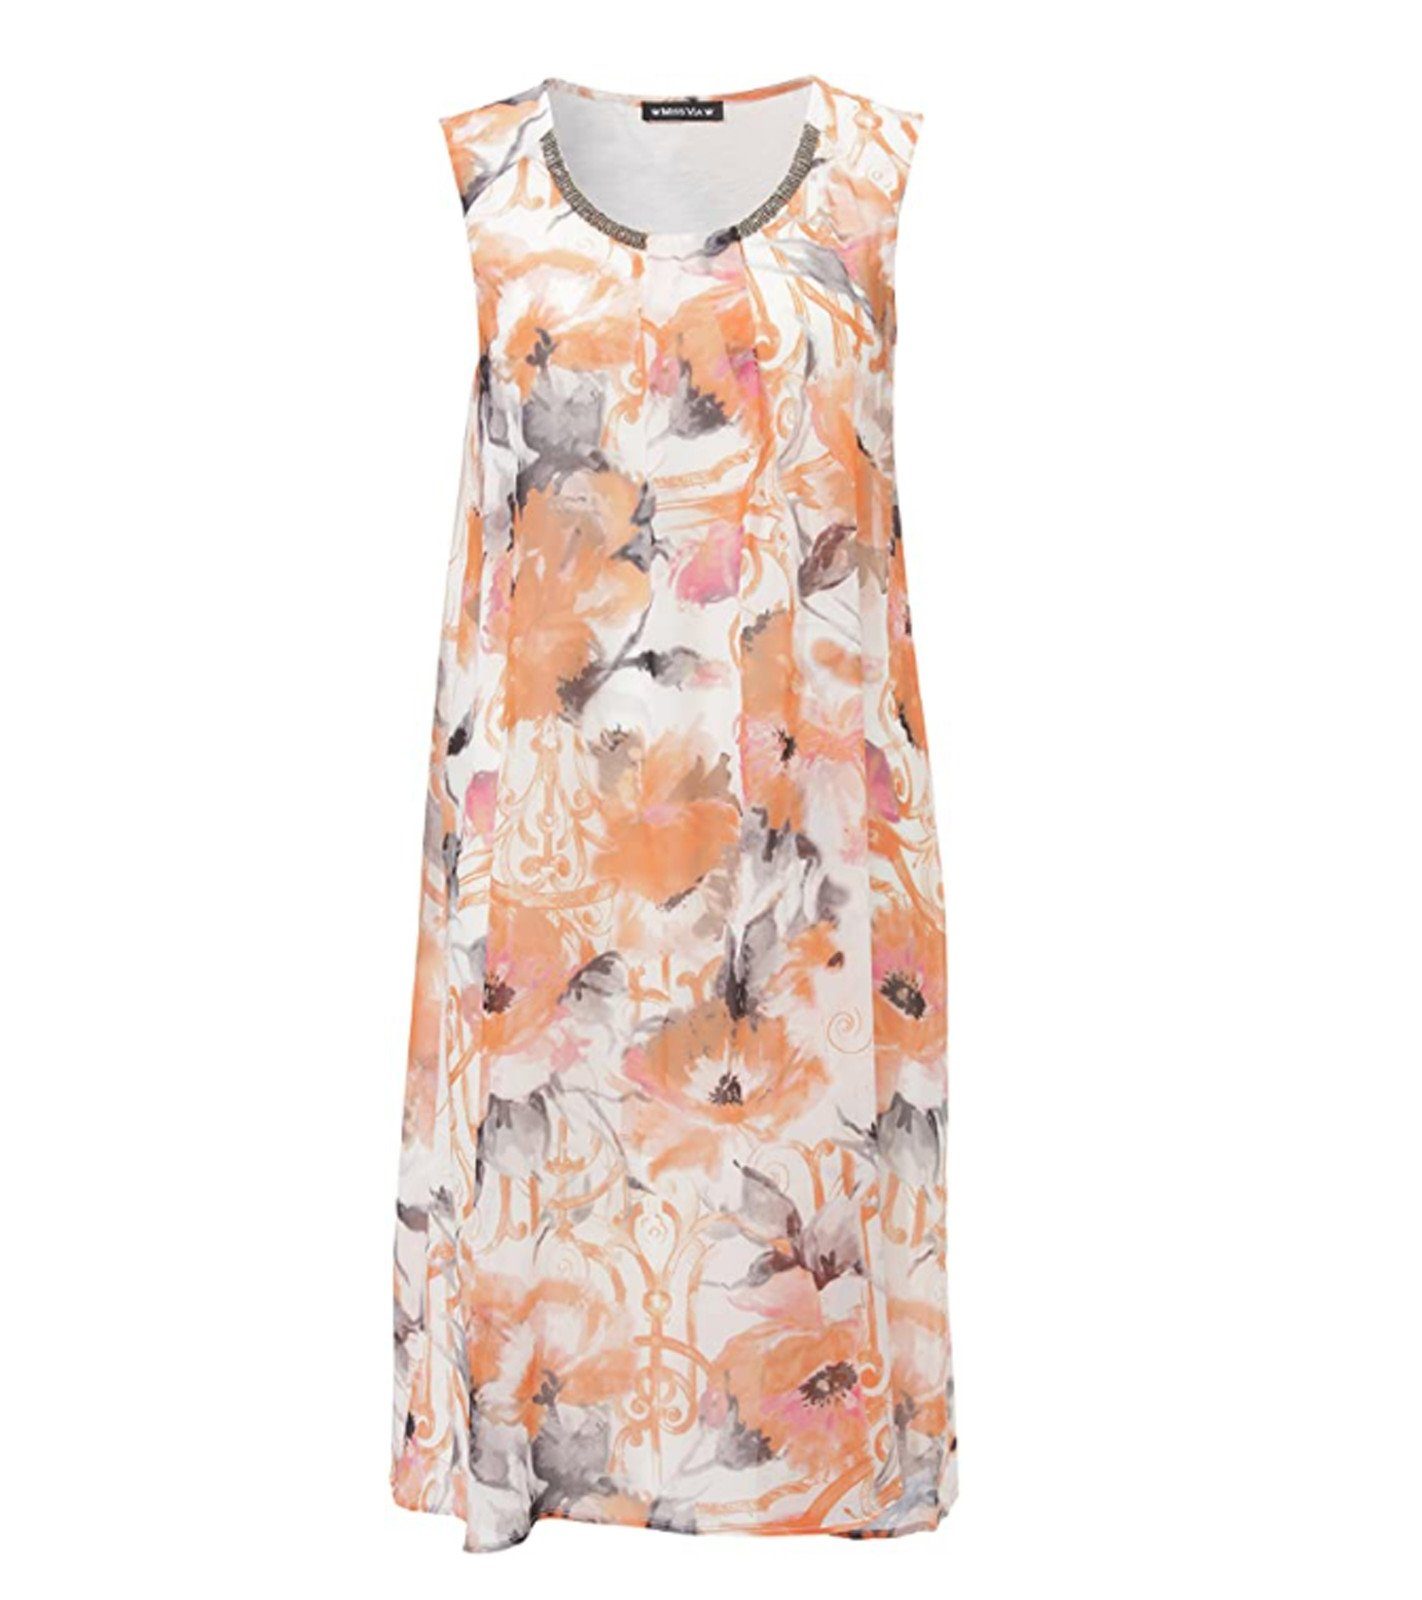 MISS VIA Sommerkleid »MISS VIA Sommer-Kleid farbenfrohes Damen Blumenmuster- Kleid Midi-Kleid Orange« online kaufen | OTTO